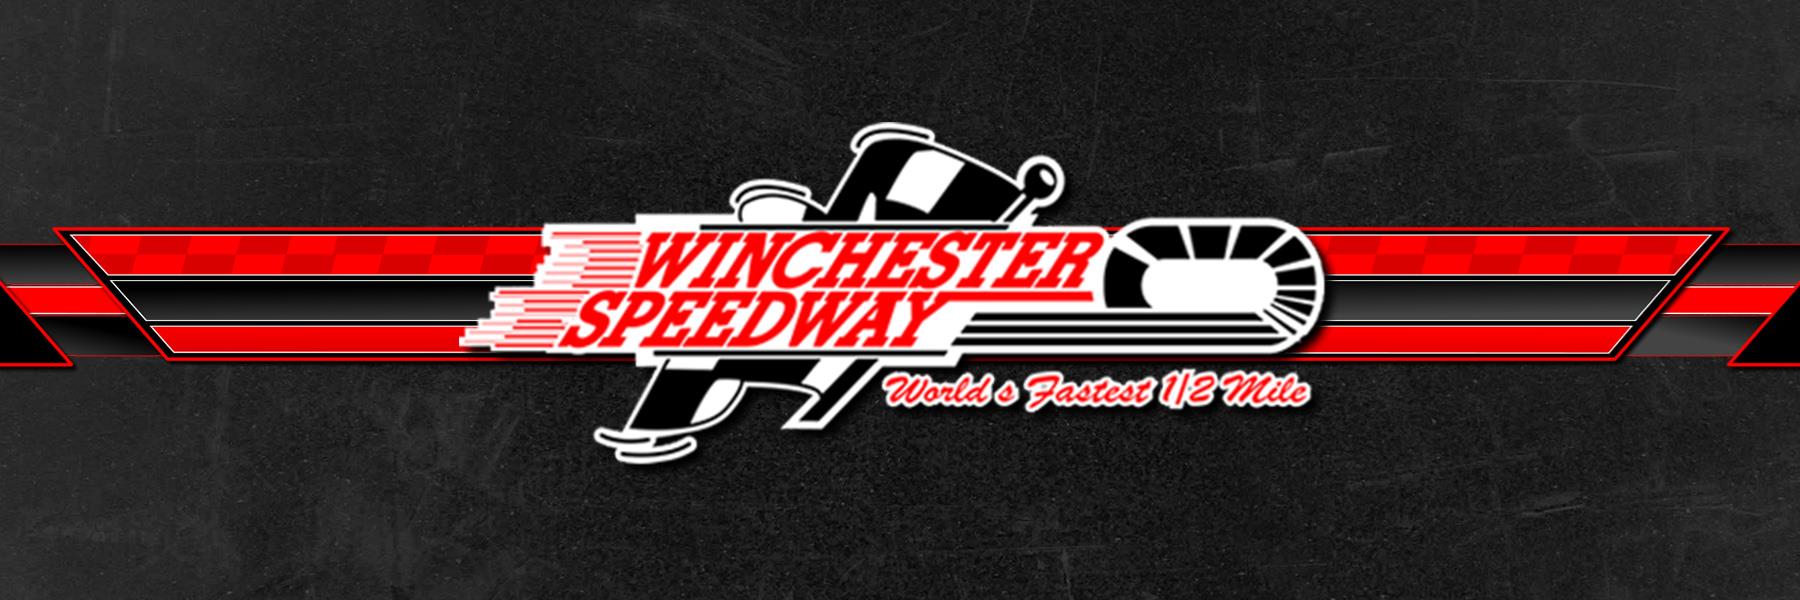 9/6/2015 - Winchester Speedway